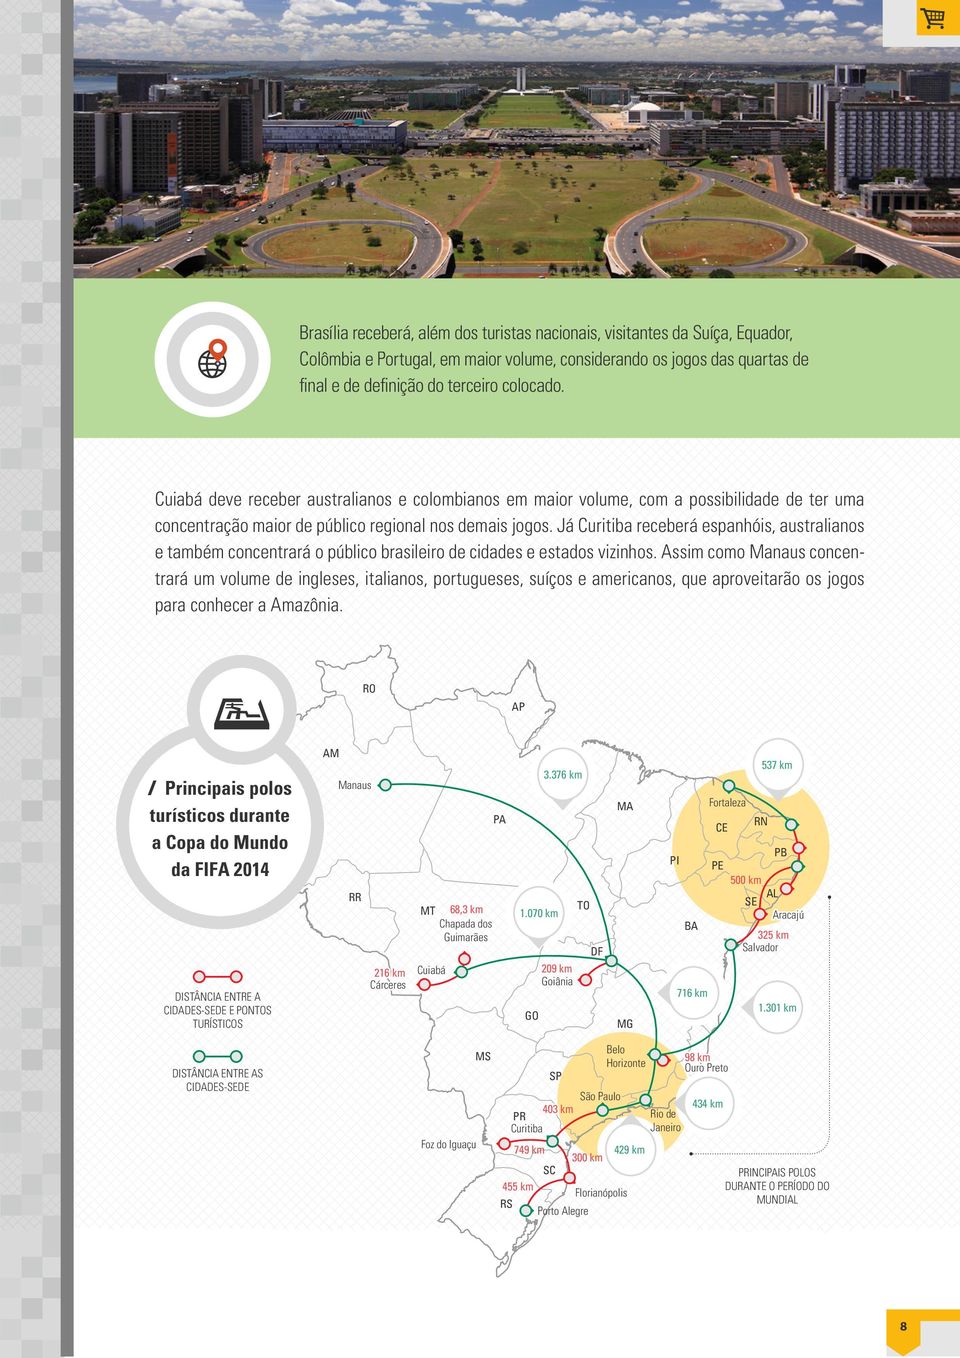 Já Curitiba receberá espanhóis, australianos e também concentrará o público brasileiro de cidades e estados vizinhos.